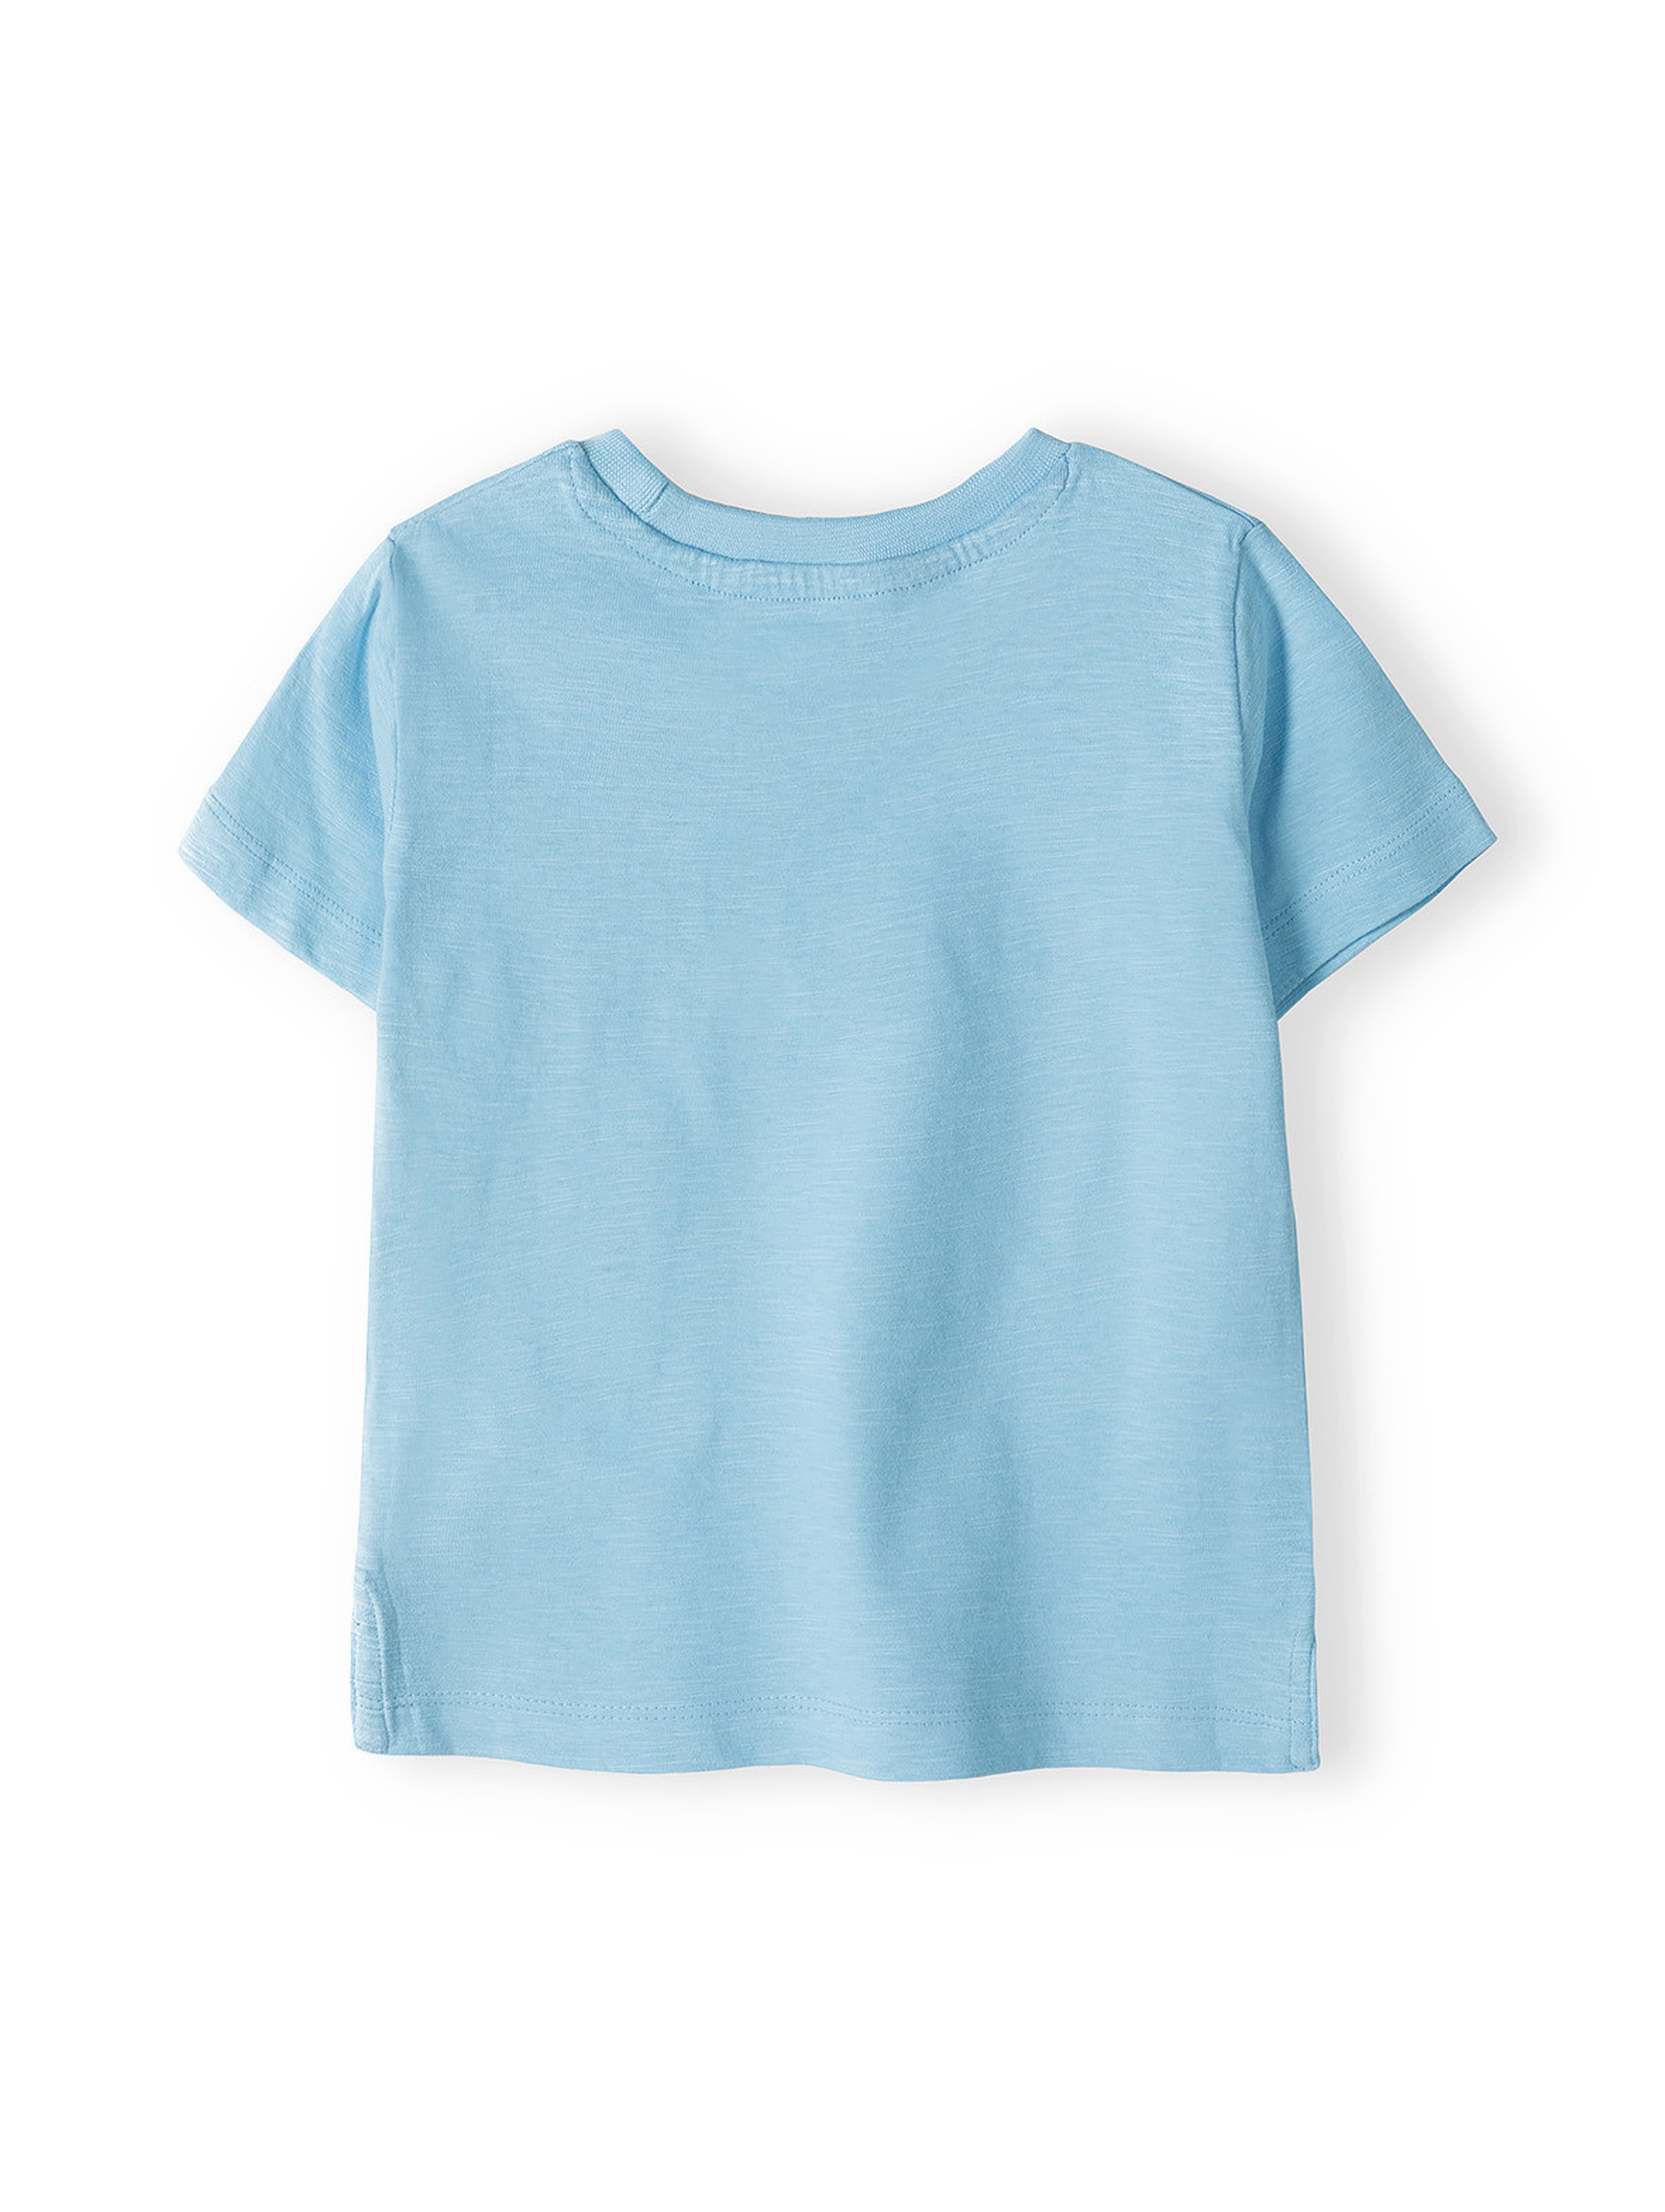 Komplet niemowlęcy - t-shirt bawełniany summer + szorty